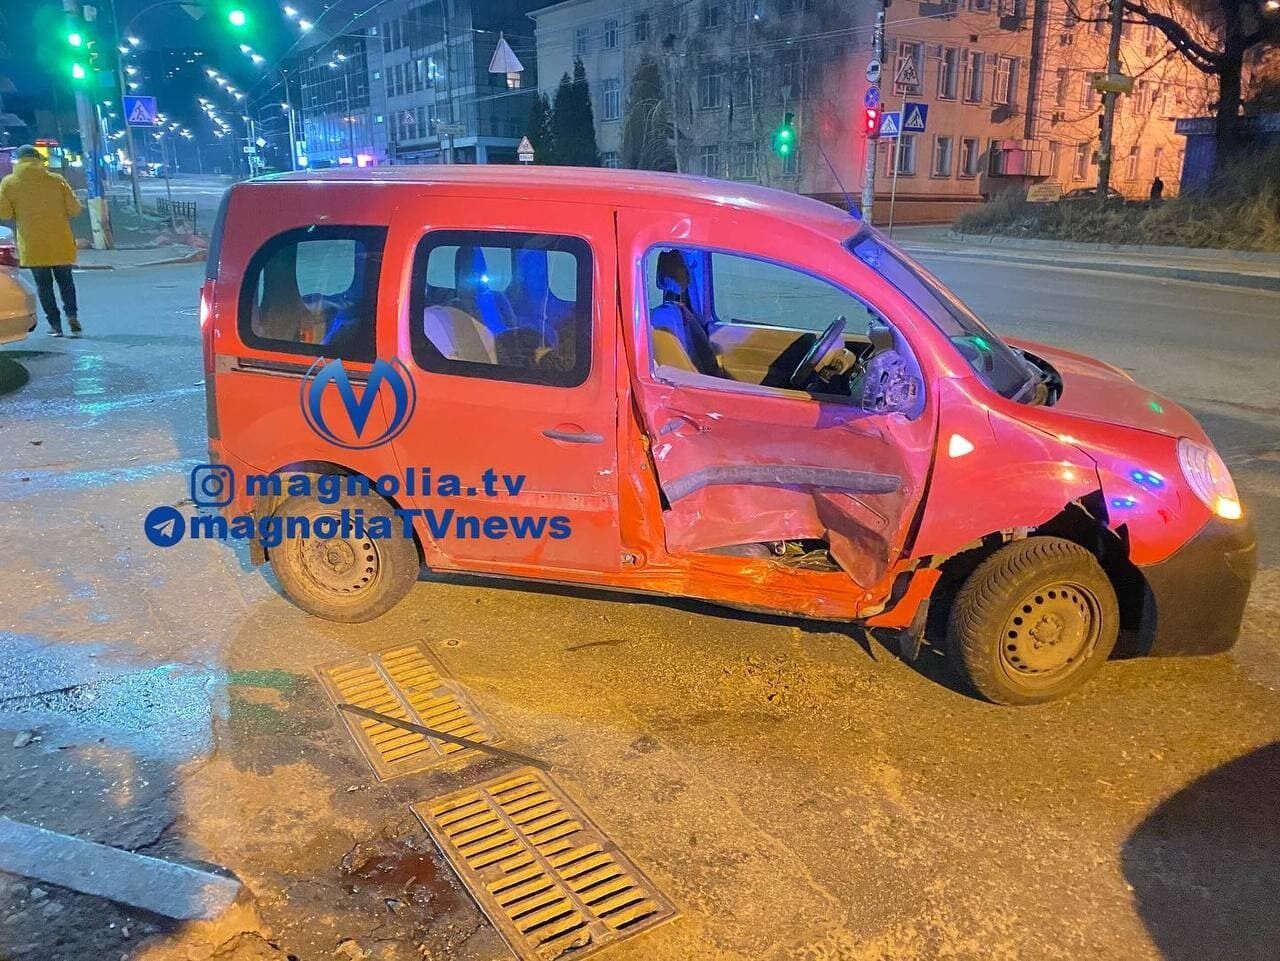 Авария произошла на улице Протасов Яр.